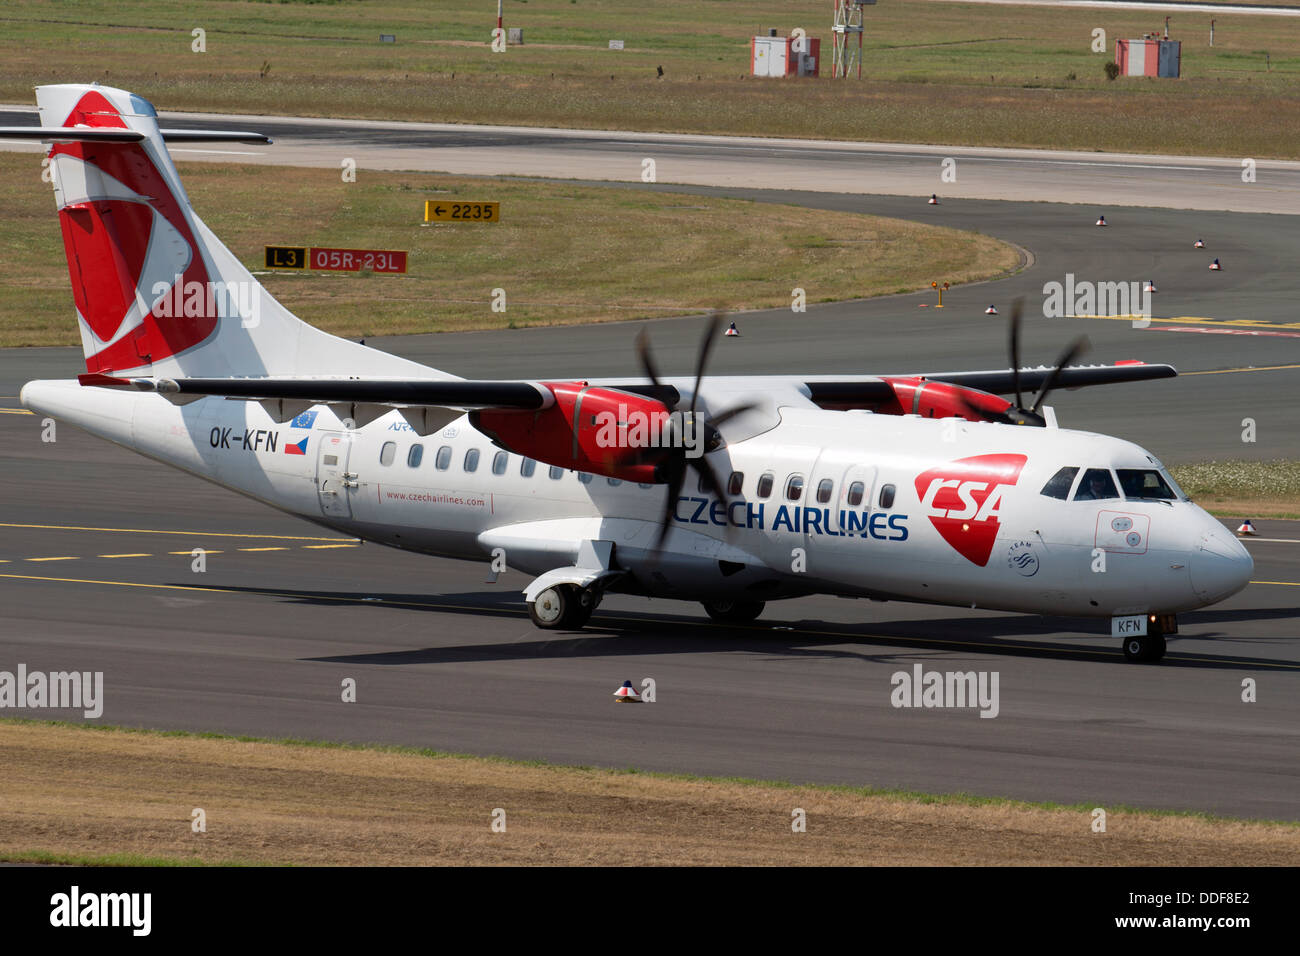 Czech Airlines Aerospatiale ATR-42-500 tassare alla pista di atterraggio all'aeroporto internazionale di Dusseldorf Foto Stock